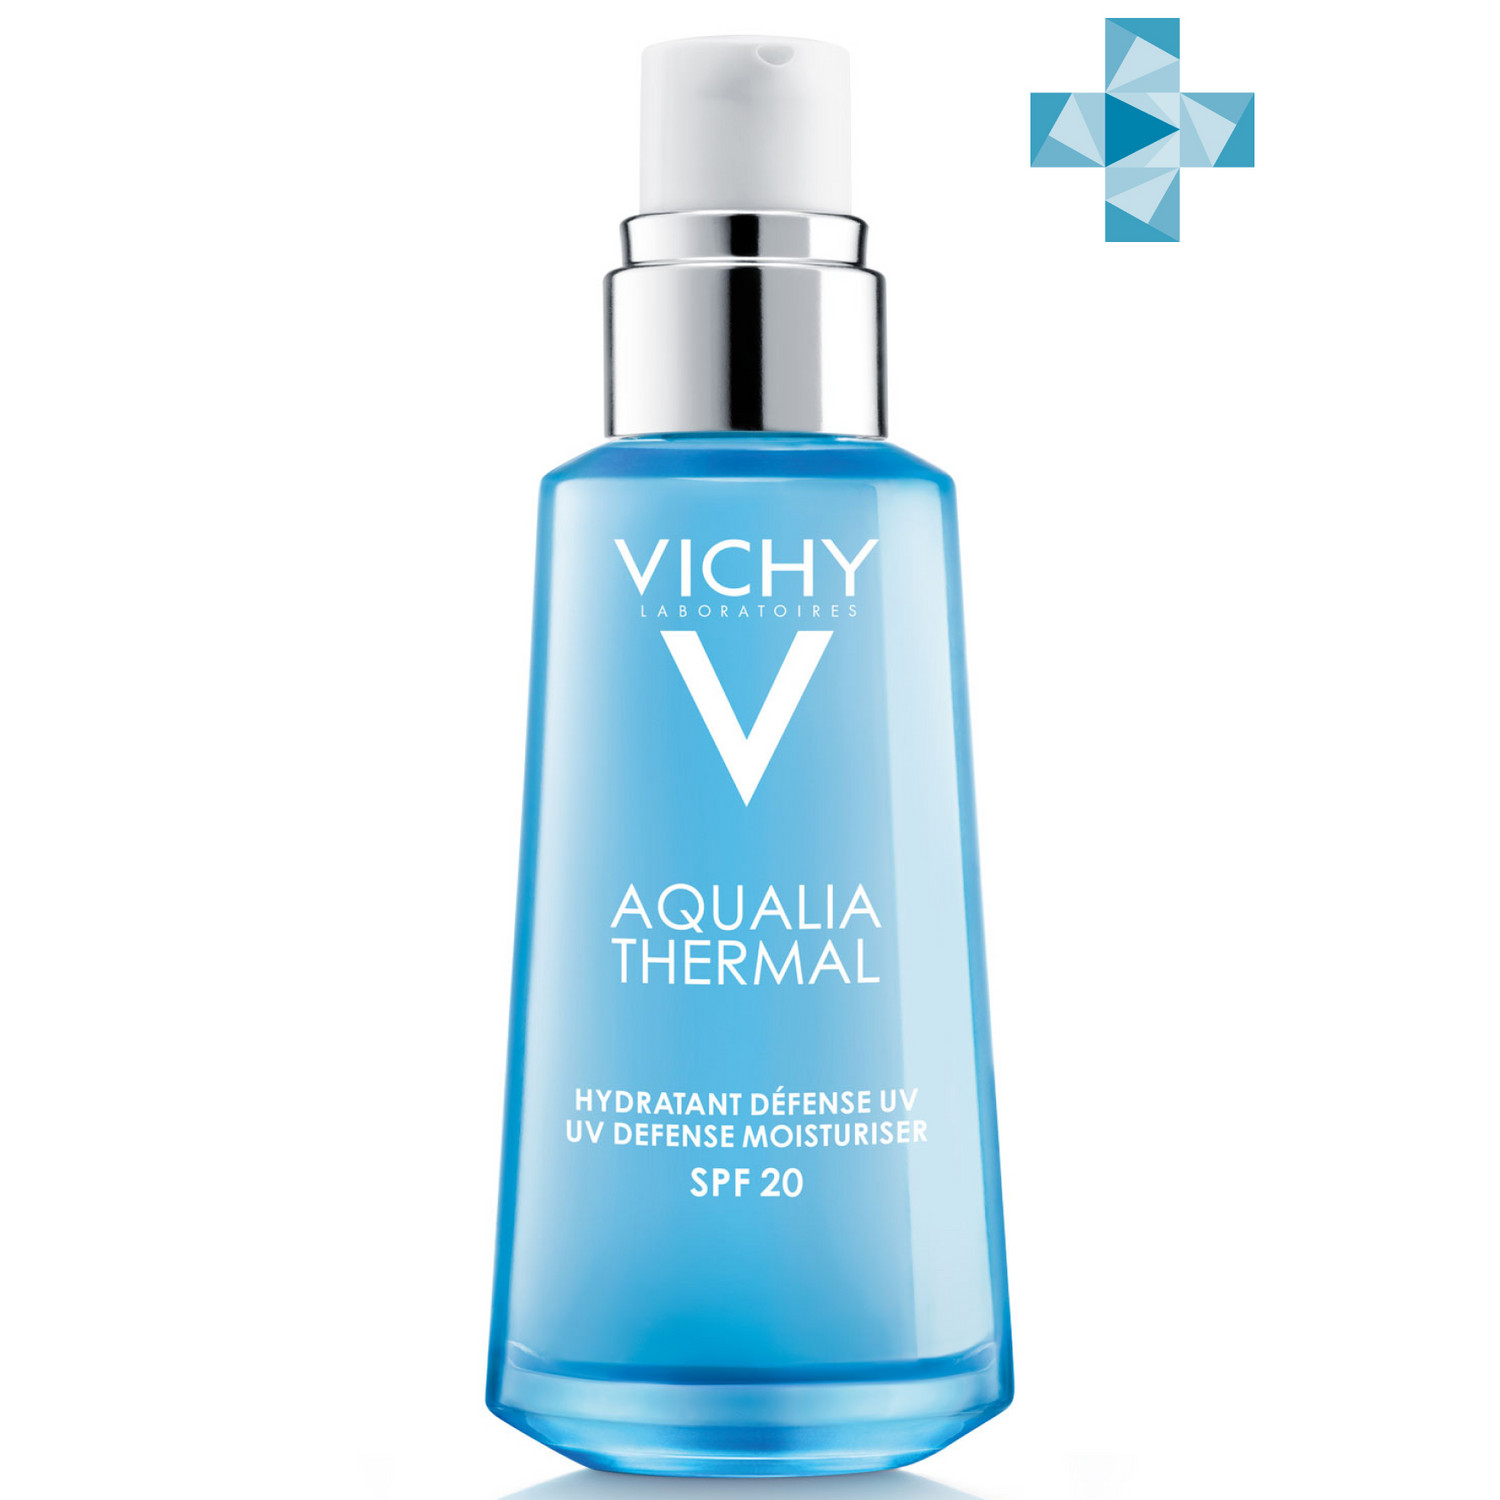 Vichy Увлажняющая эмульсия для лица SPF 20, 50 мл (Vichy, Aqualia Thermal)